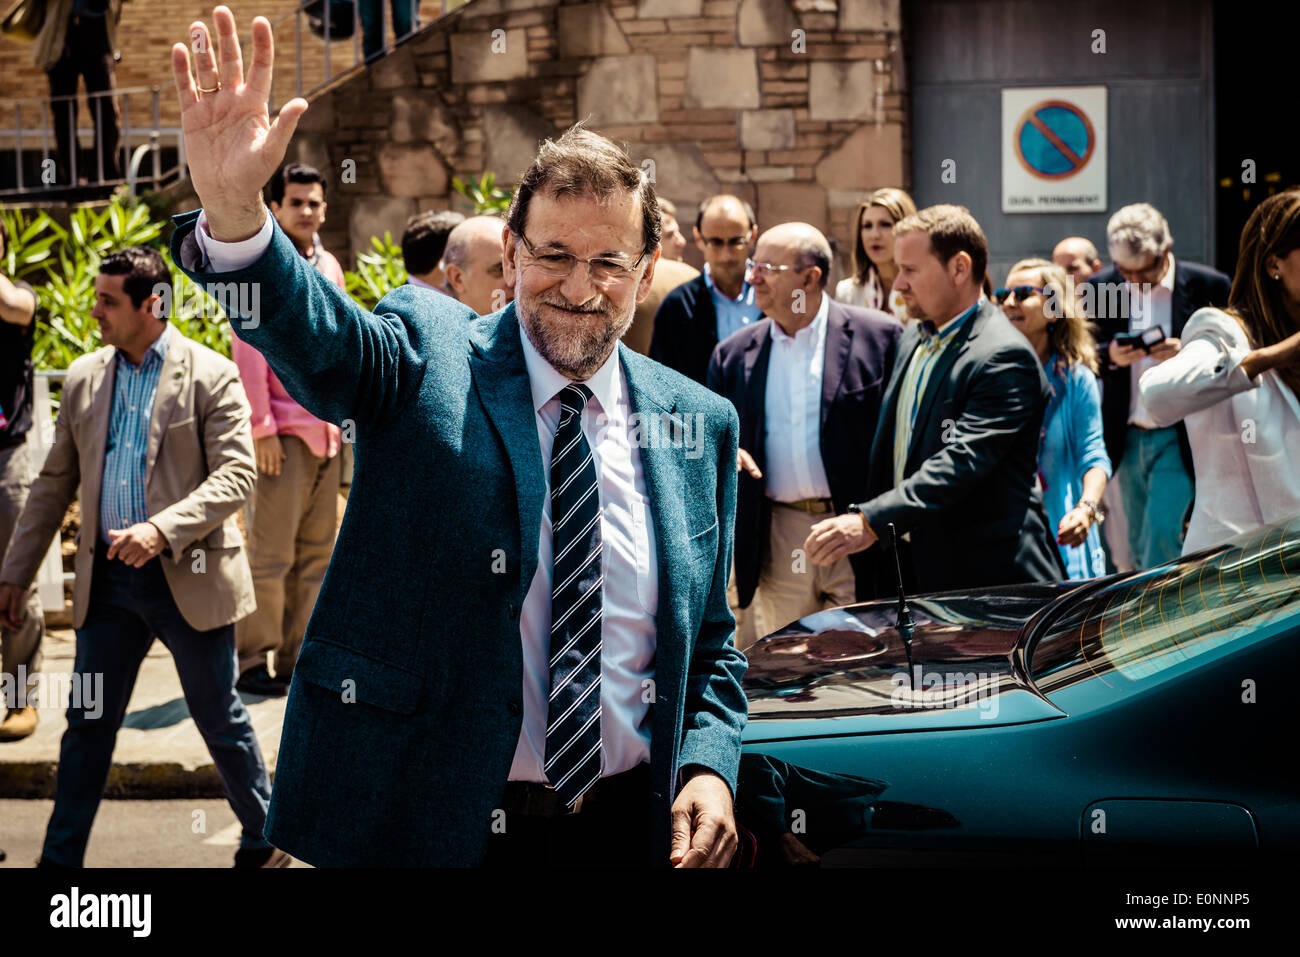 Barcelone, Espagne. May 17th, 2014 : Mariano Rajoy Brey, Président du Gouvernement espagnol, accueille comme il quitte une réunion électorale à Barcelone pour les élections européennes : Crédit matthi/Alamy Live News Banque D'Images